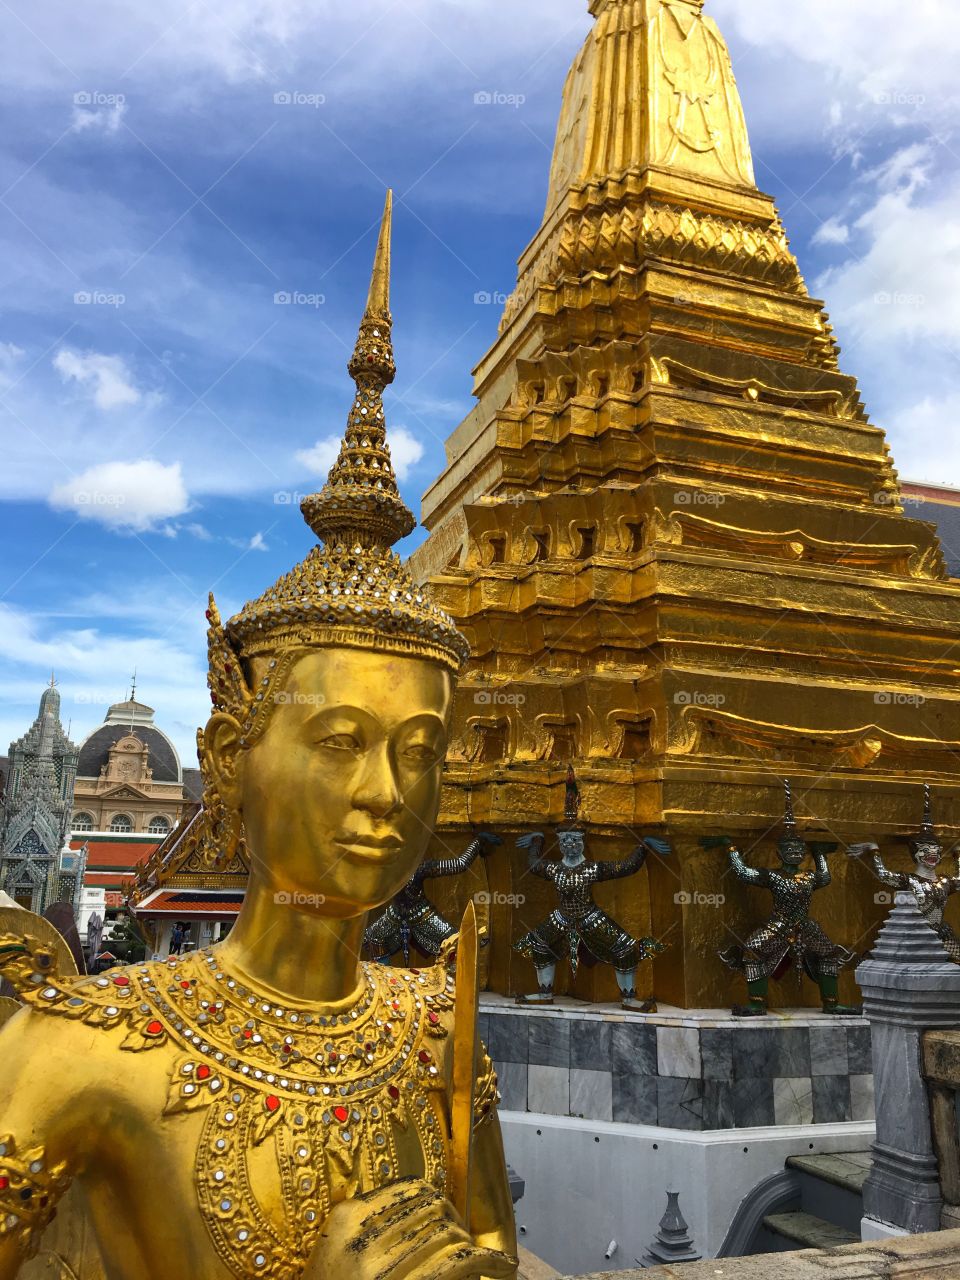 Grand Palace / Bangkok Thailand 61